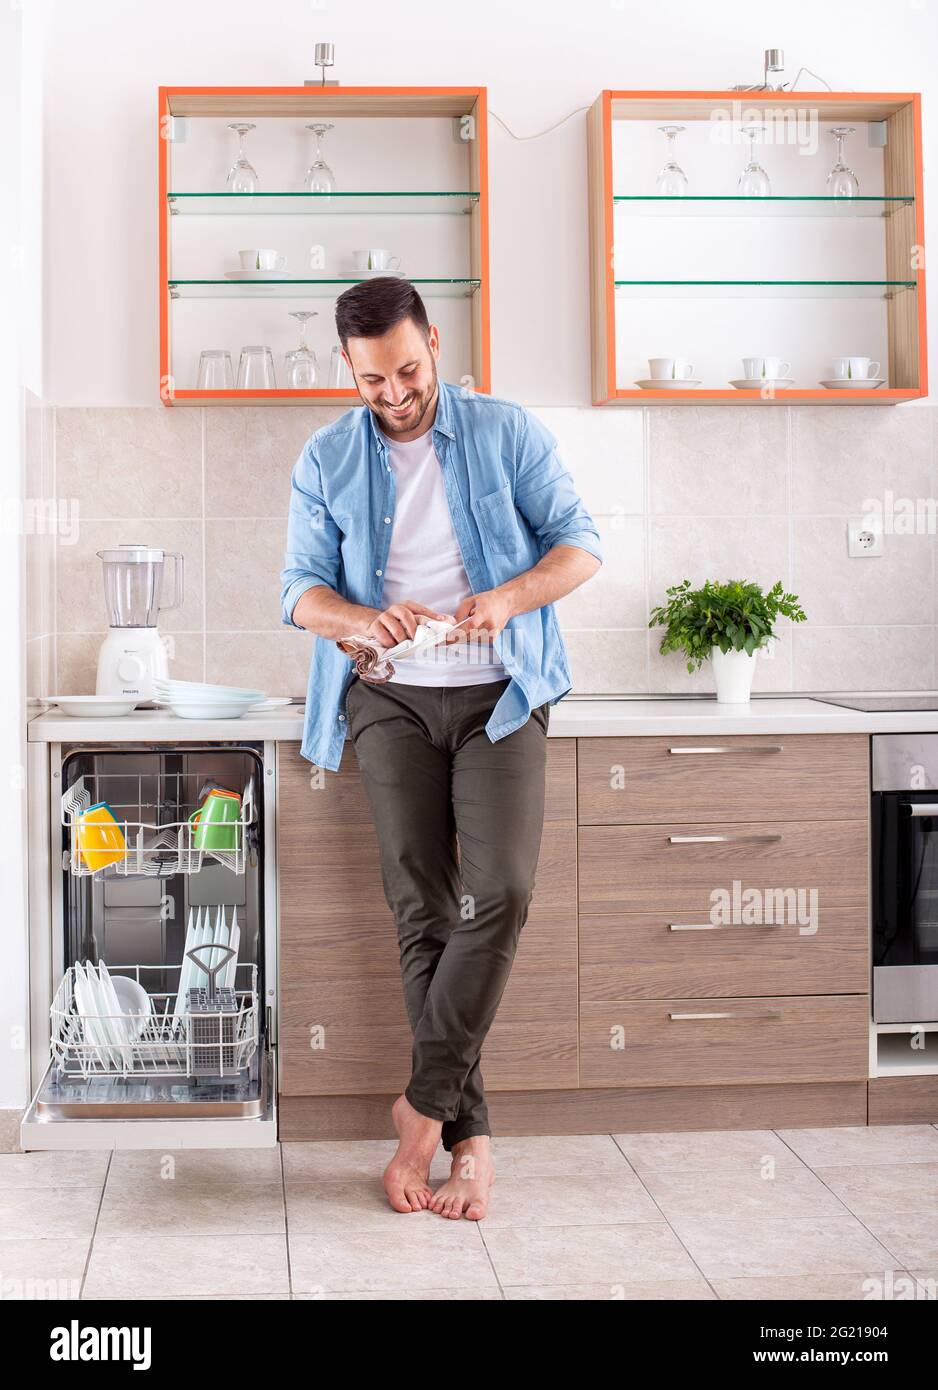 Junger Mann in der Küche tut Hausarbeiten Reinigung Geschirr wischen. Attraktiver Mann Polierplatte lächelt glücklich. Stockfoto